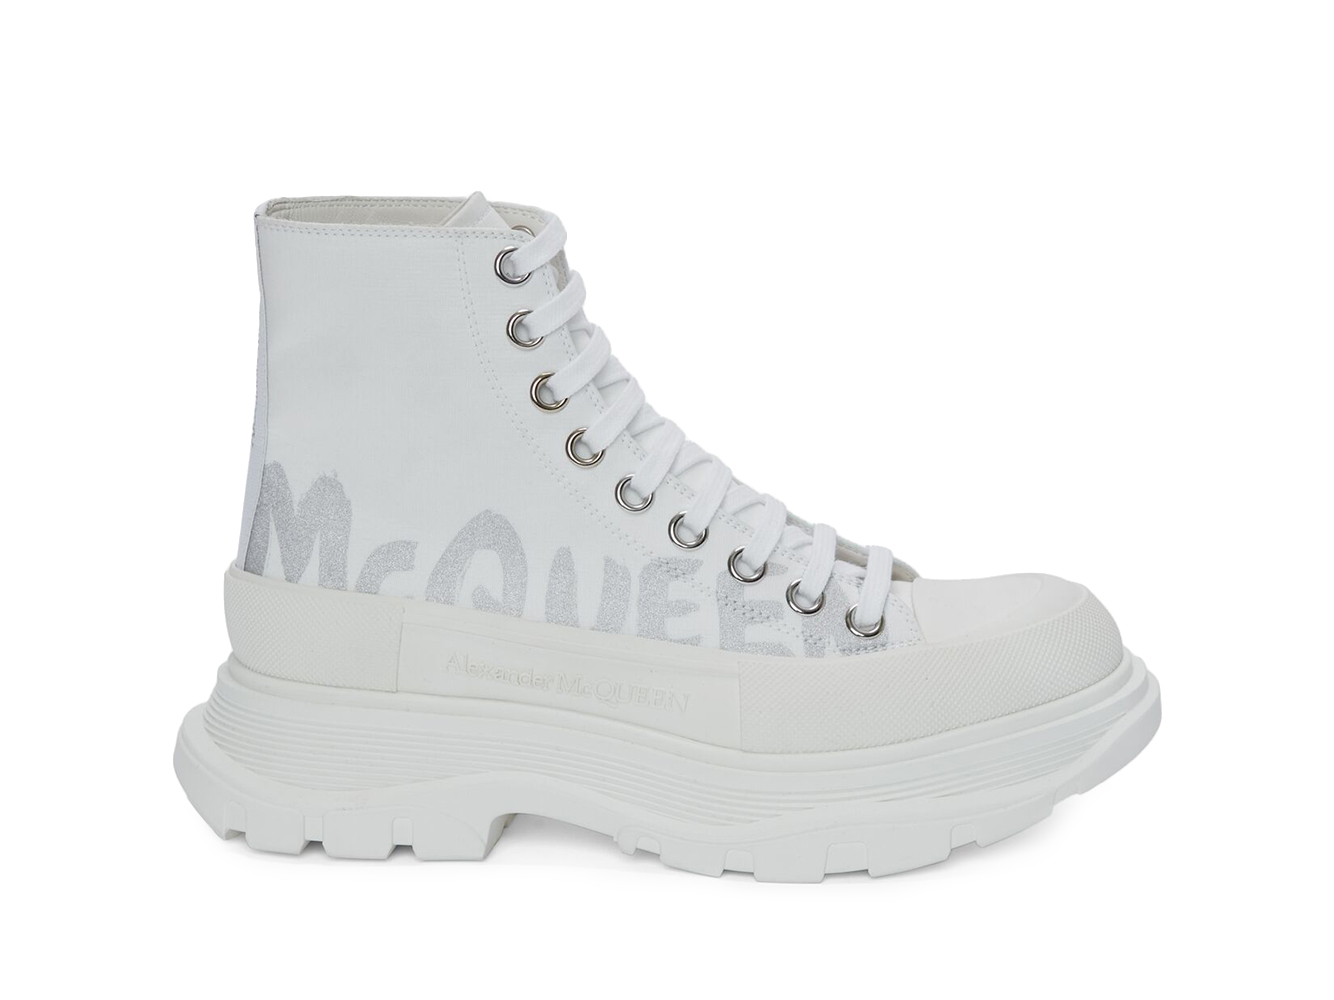 Alexander McQueen Tread Slick Boot Graffiti White Silver (Women's 